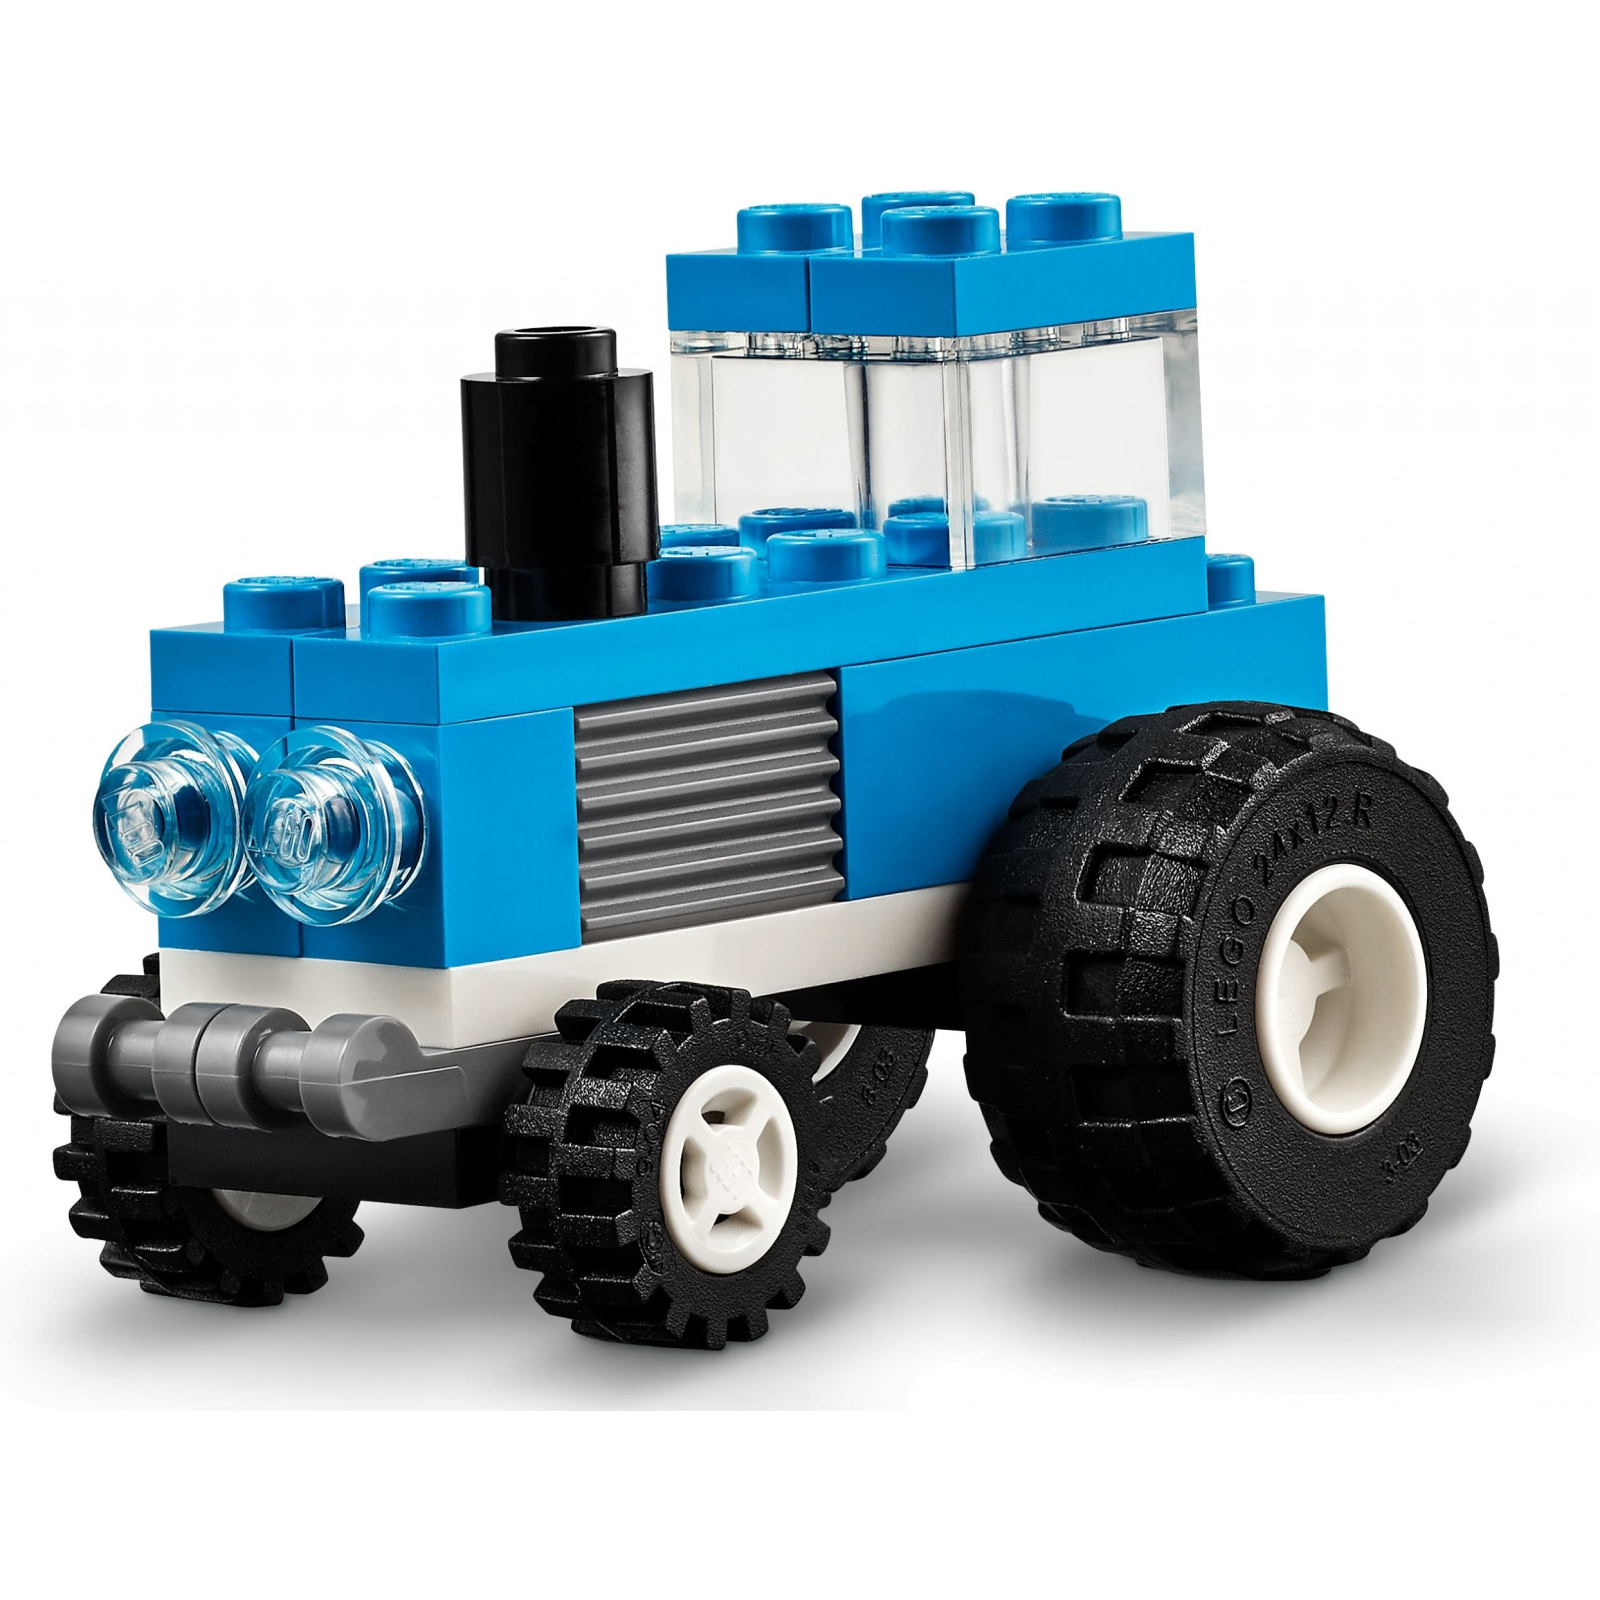 Конструктор LEGO Classic Творчі транспортні засоби 900 деталей (11036) зображення 5